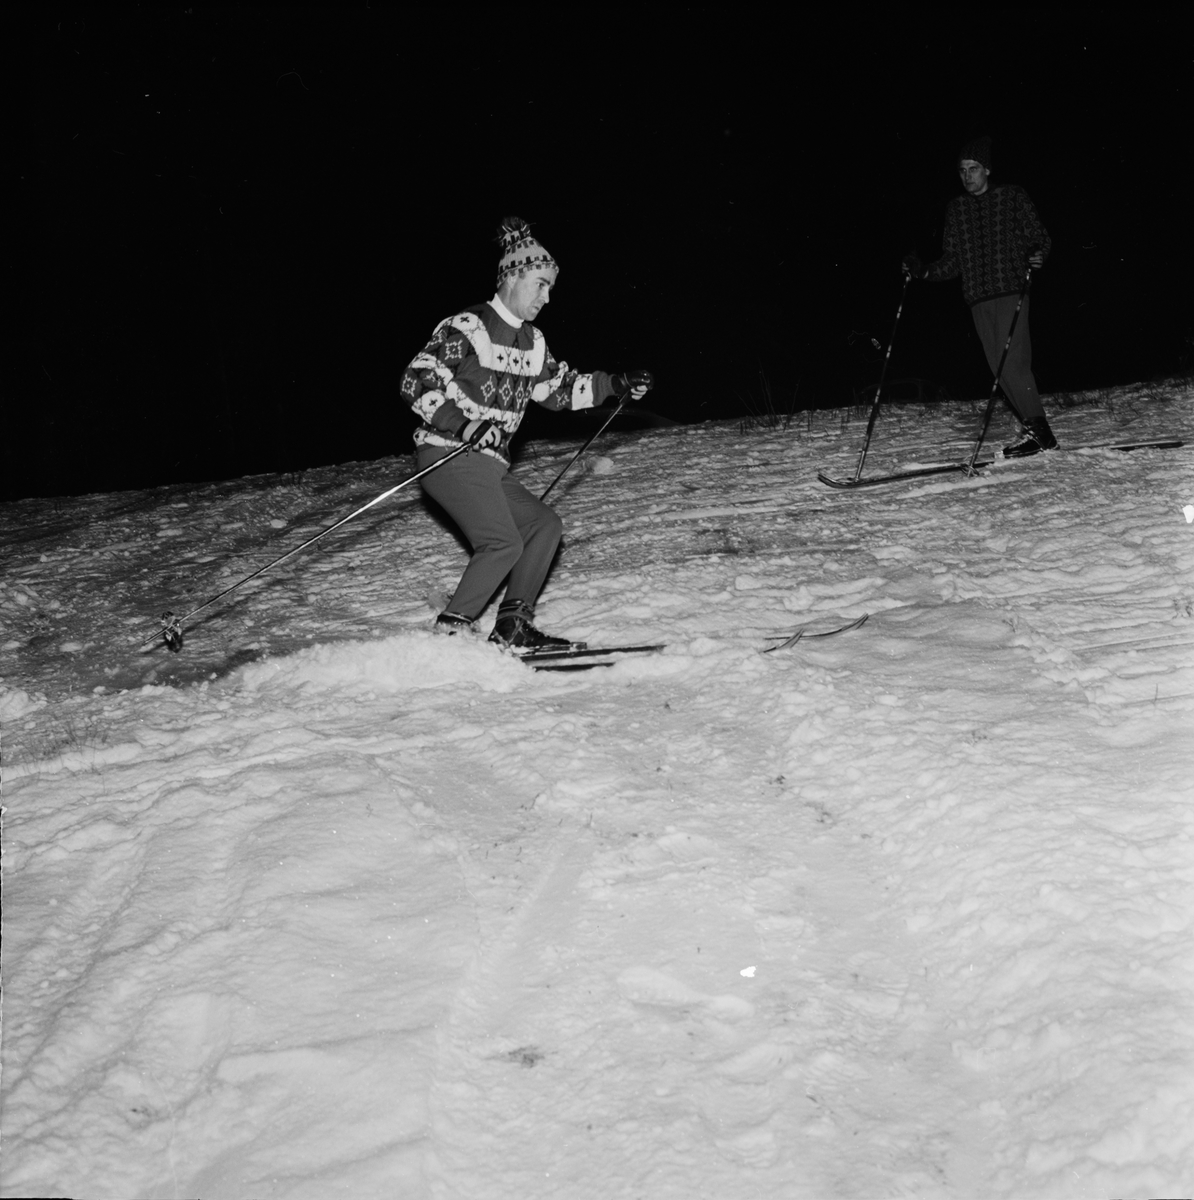 "Tidig skidpremiär", Uppsala 1962